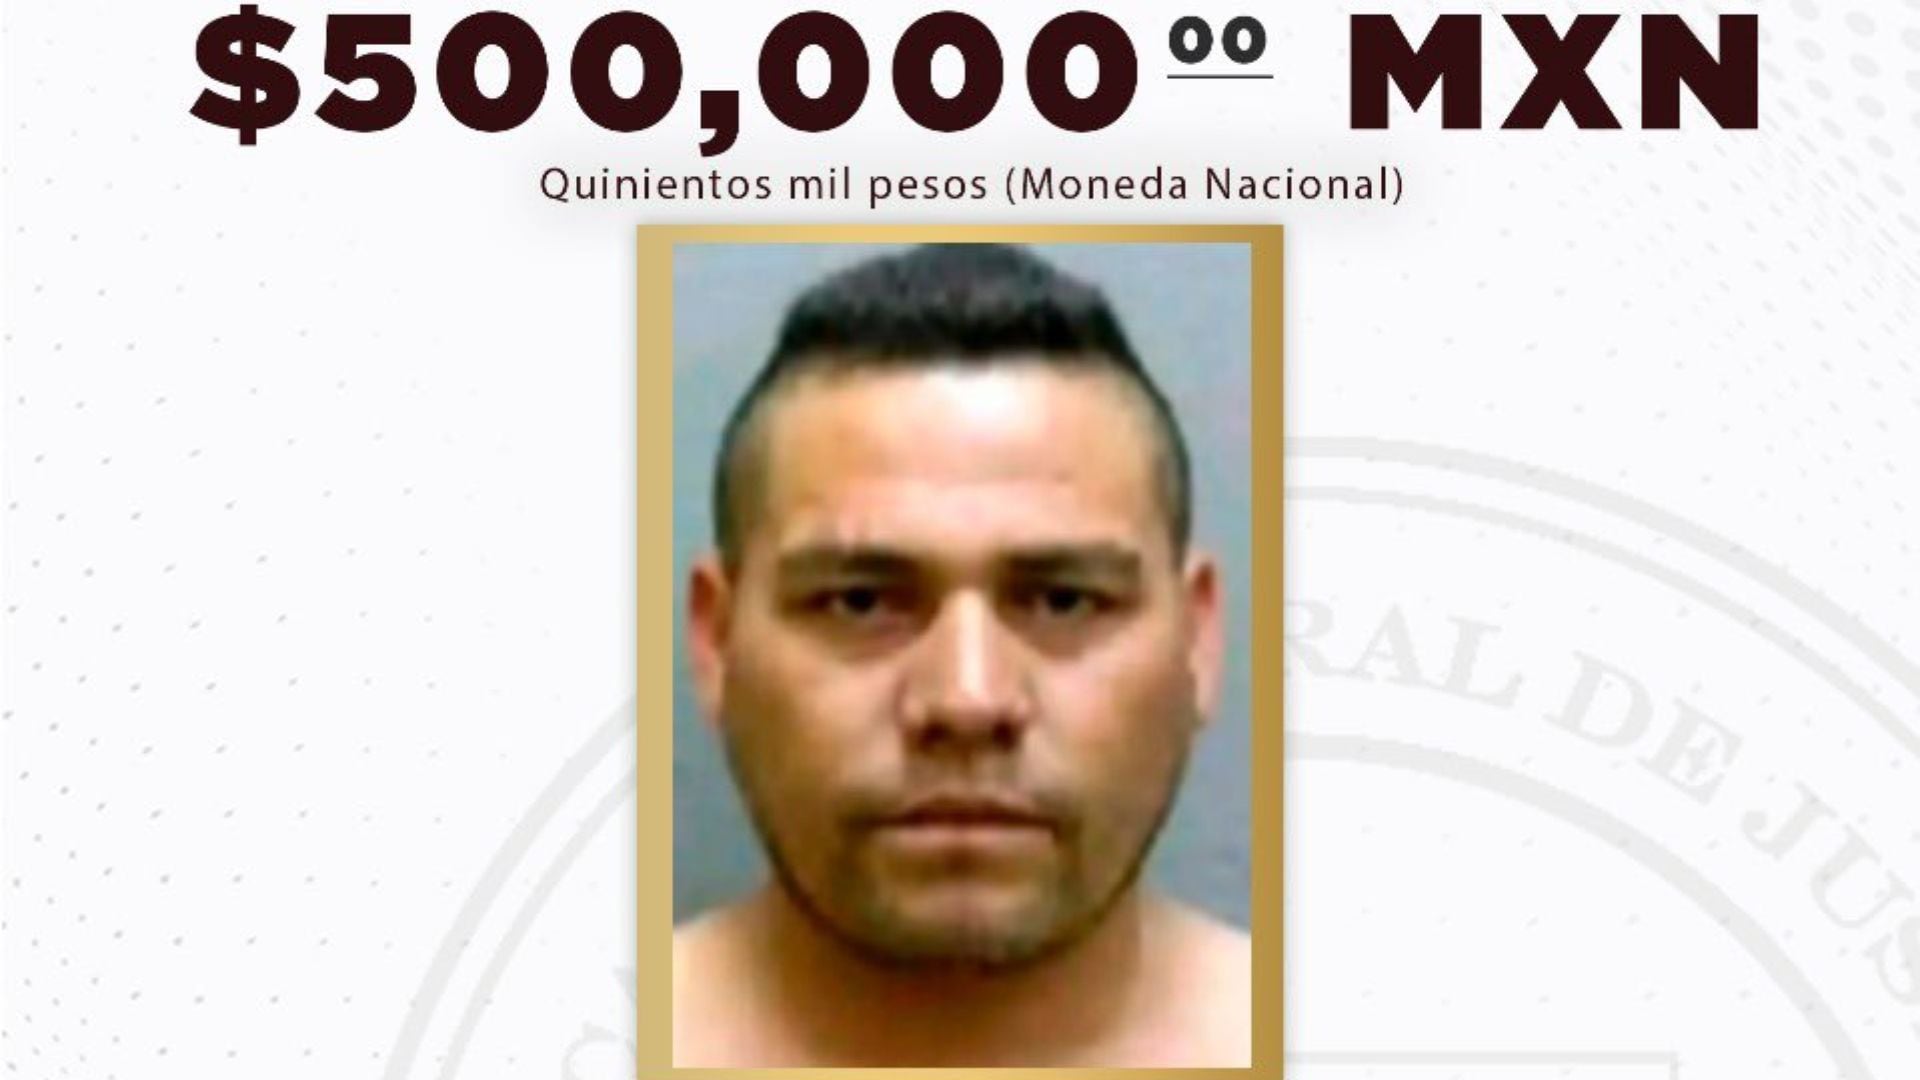 Ficha de búsqueda de 'El Rábano' de La Plaza. (Fiscalía de Sonora)